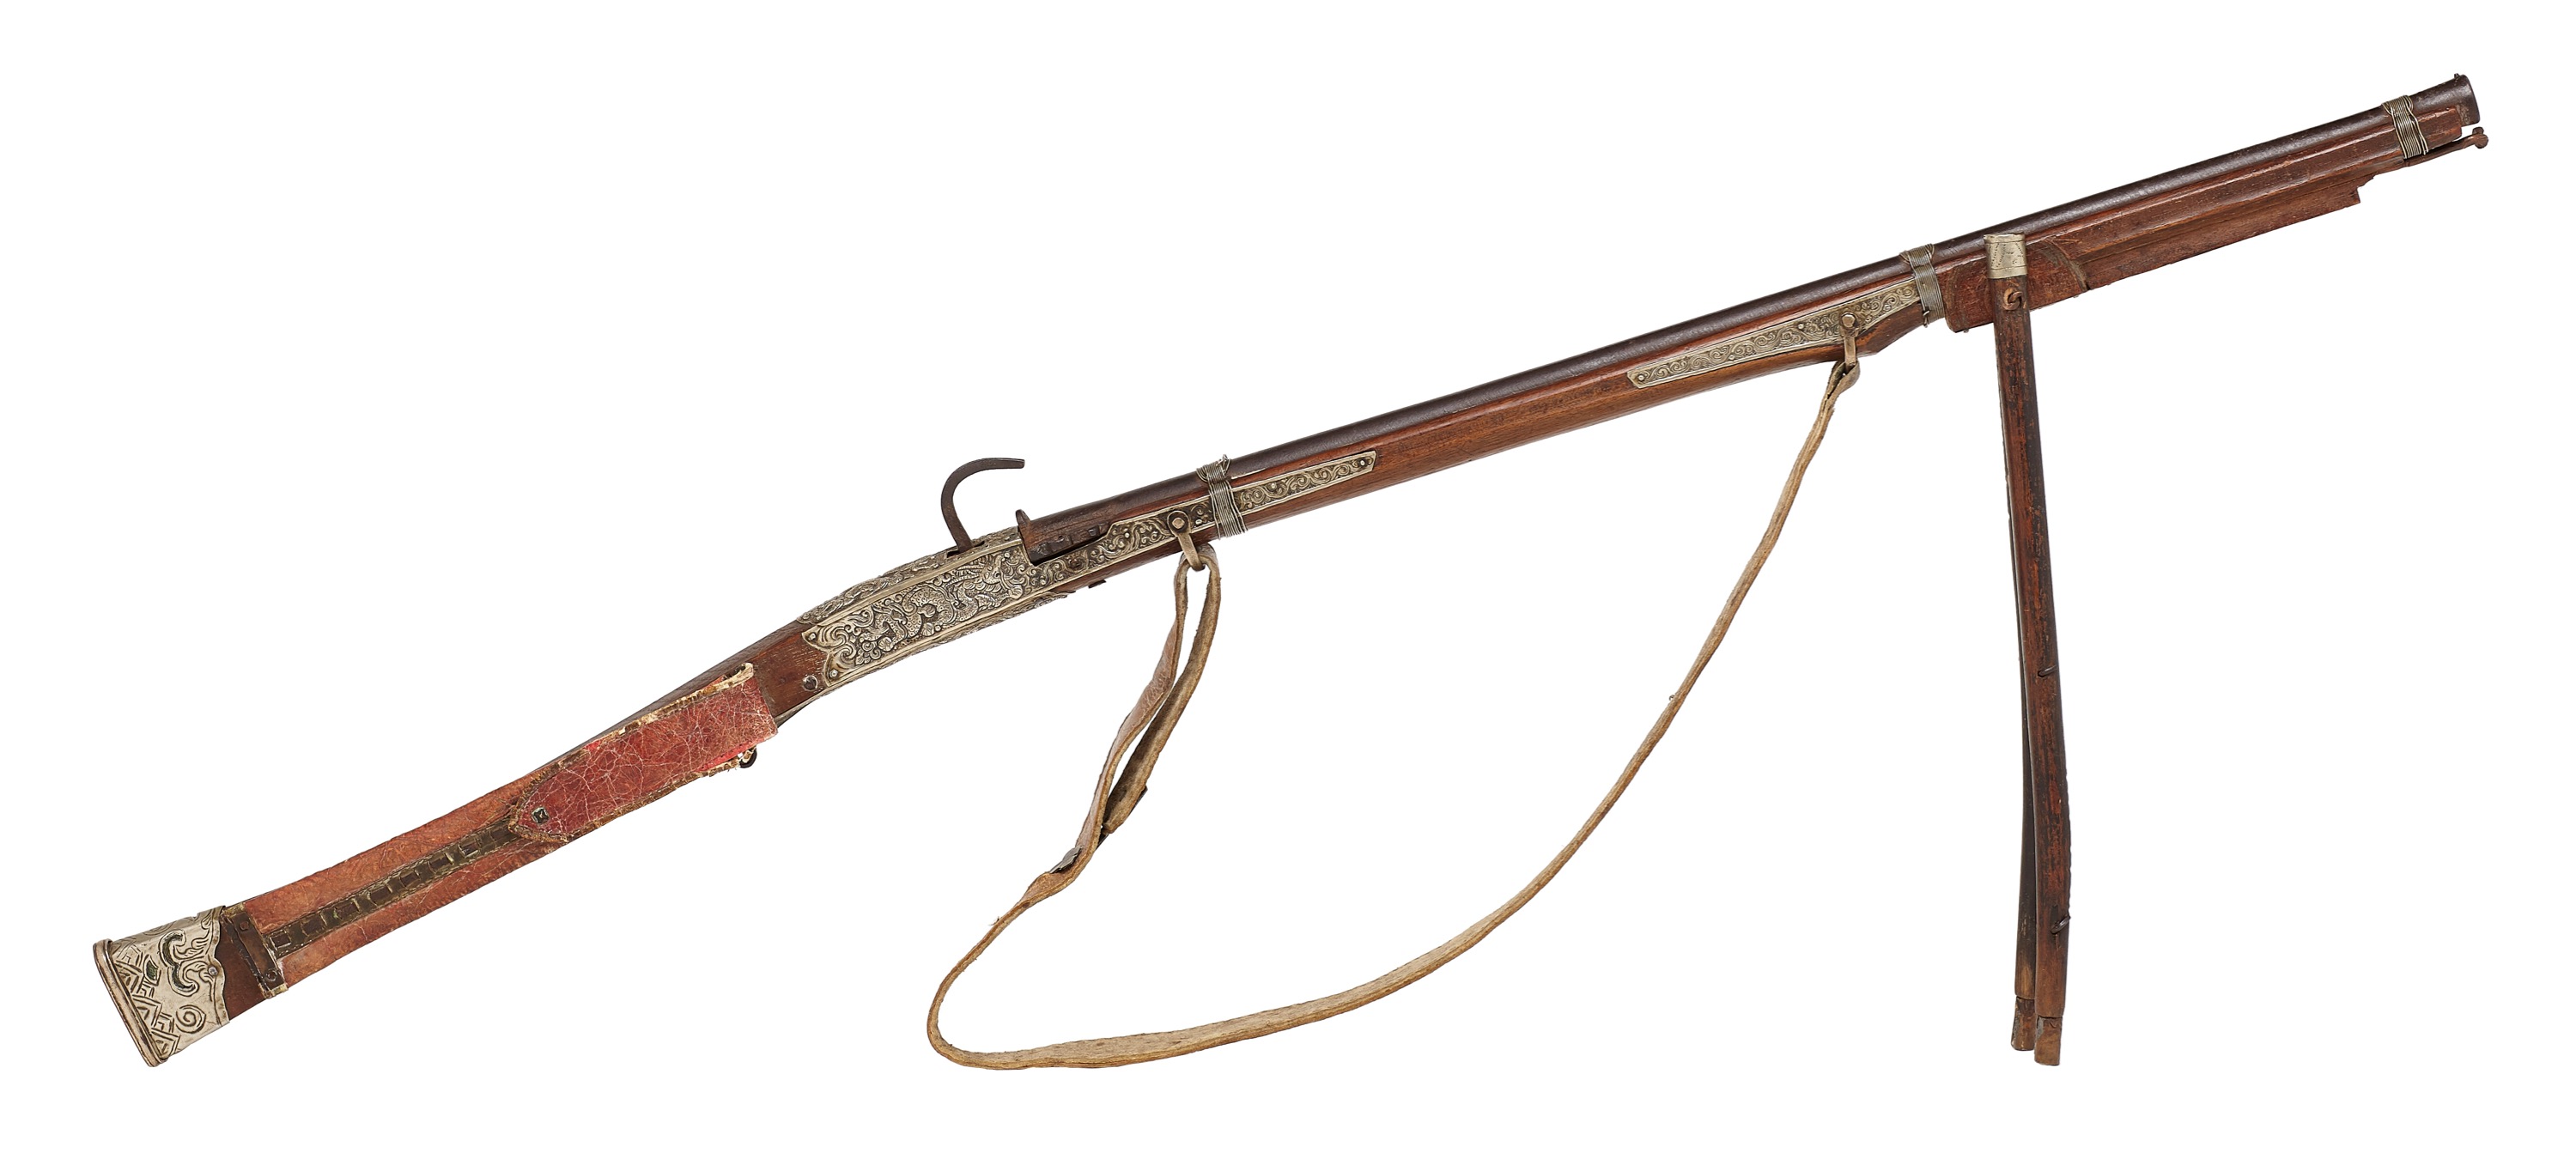 Tibetan matchlock musket